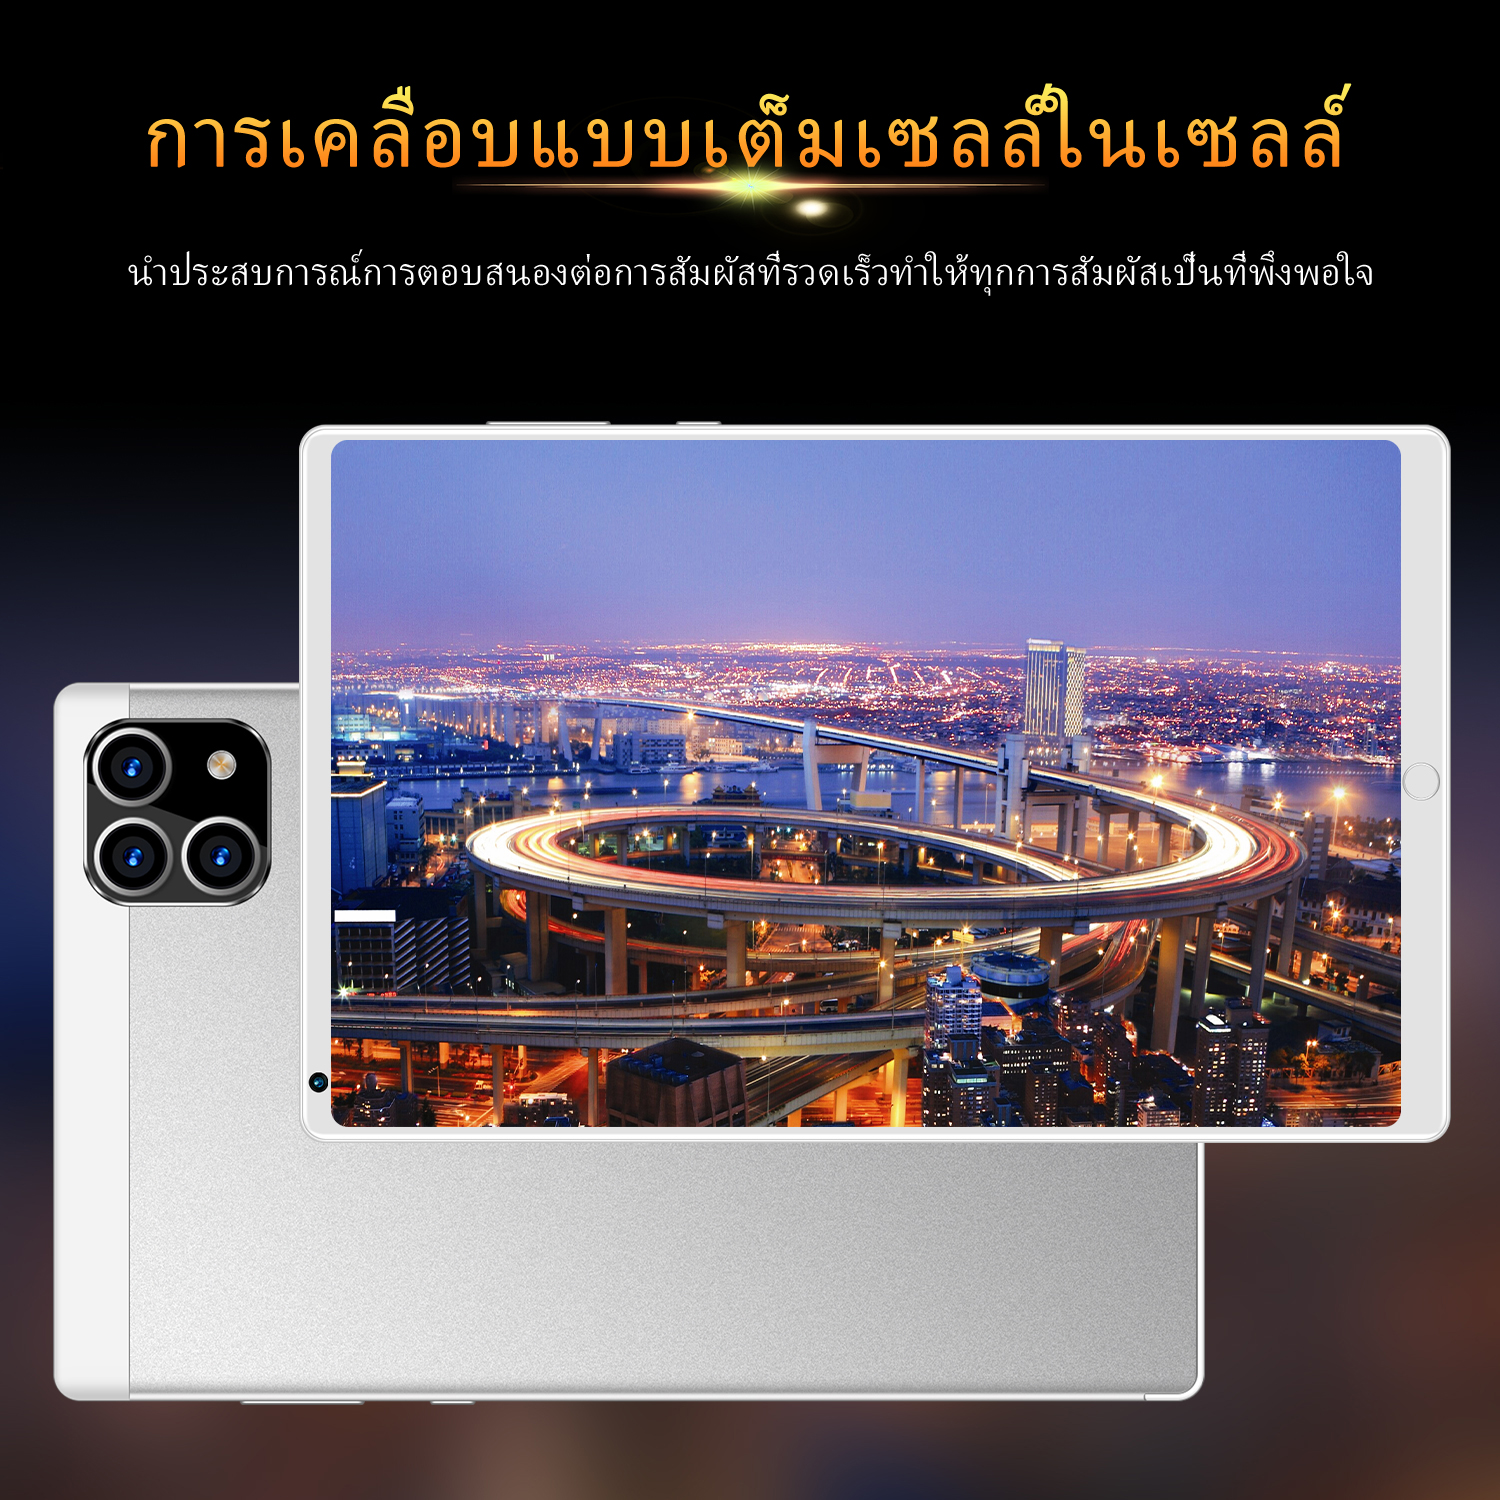 ภาพที่ให้รายละเอียดเกี่ยวกับ Tablet realme Pad MINI แท็บเล็ต RAM12G ROM512G 10.1นิ้ว โทรได้ แท็บเล็ตถูกๆ แท็บเล็ตราคาถูก Andorid 10.0 Tablet จัดส่งฟรี รองรับภาษาไทย หน่วยประมวลผล 10-core แท็บเล็ตโทรได้ แท็บเล็ตสำหรับเล่นเกมราคาถูก แท็บเล็ตราคาถูกๆ แท็บเล็ตราคาถูกรุ่นล่าสุด ไอเเพ็ด